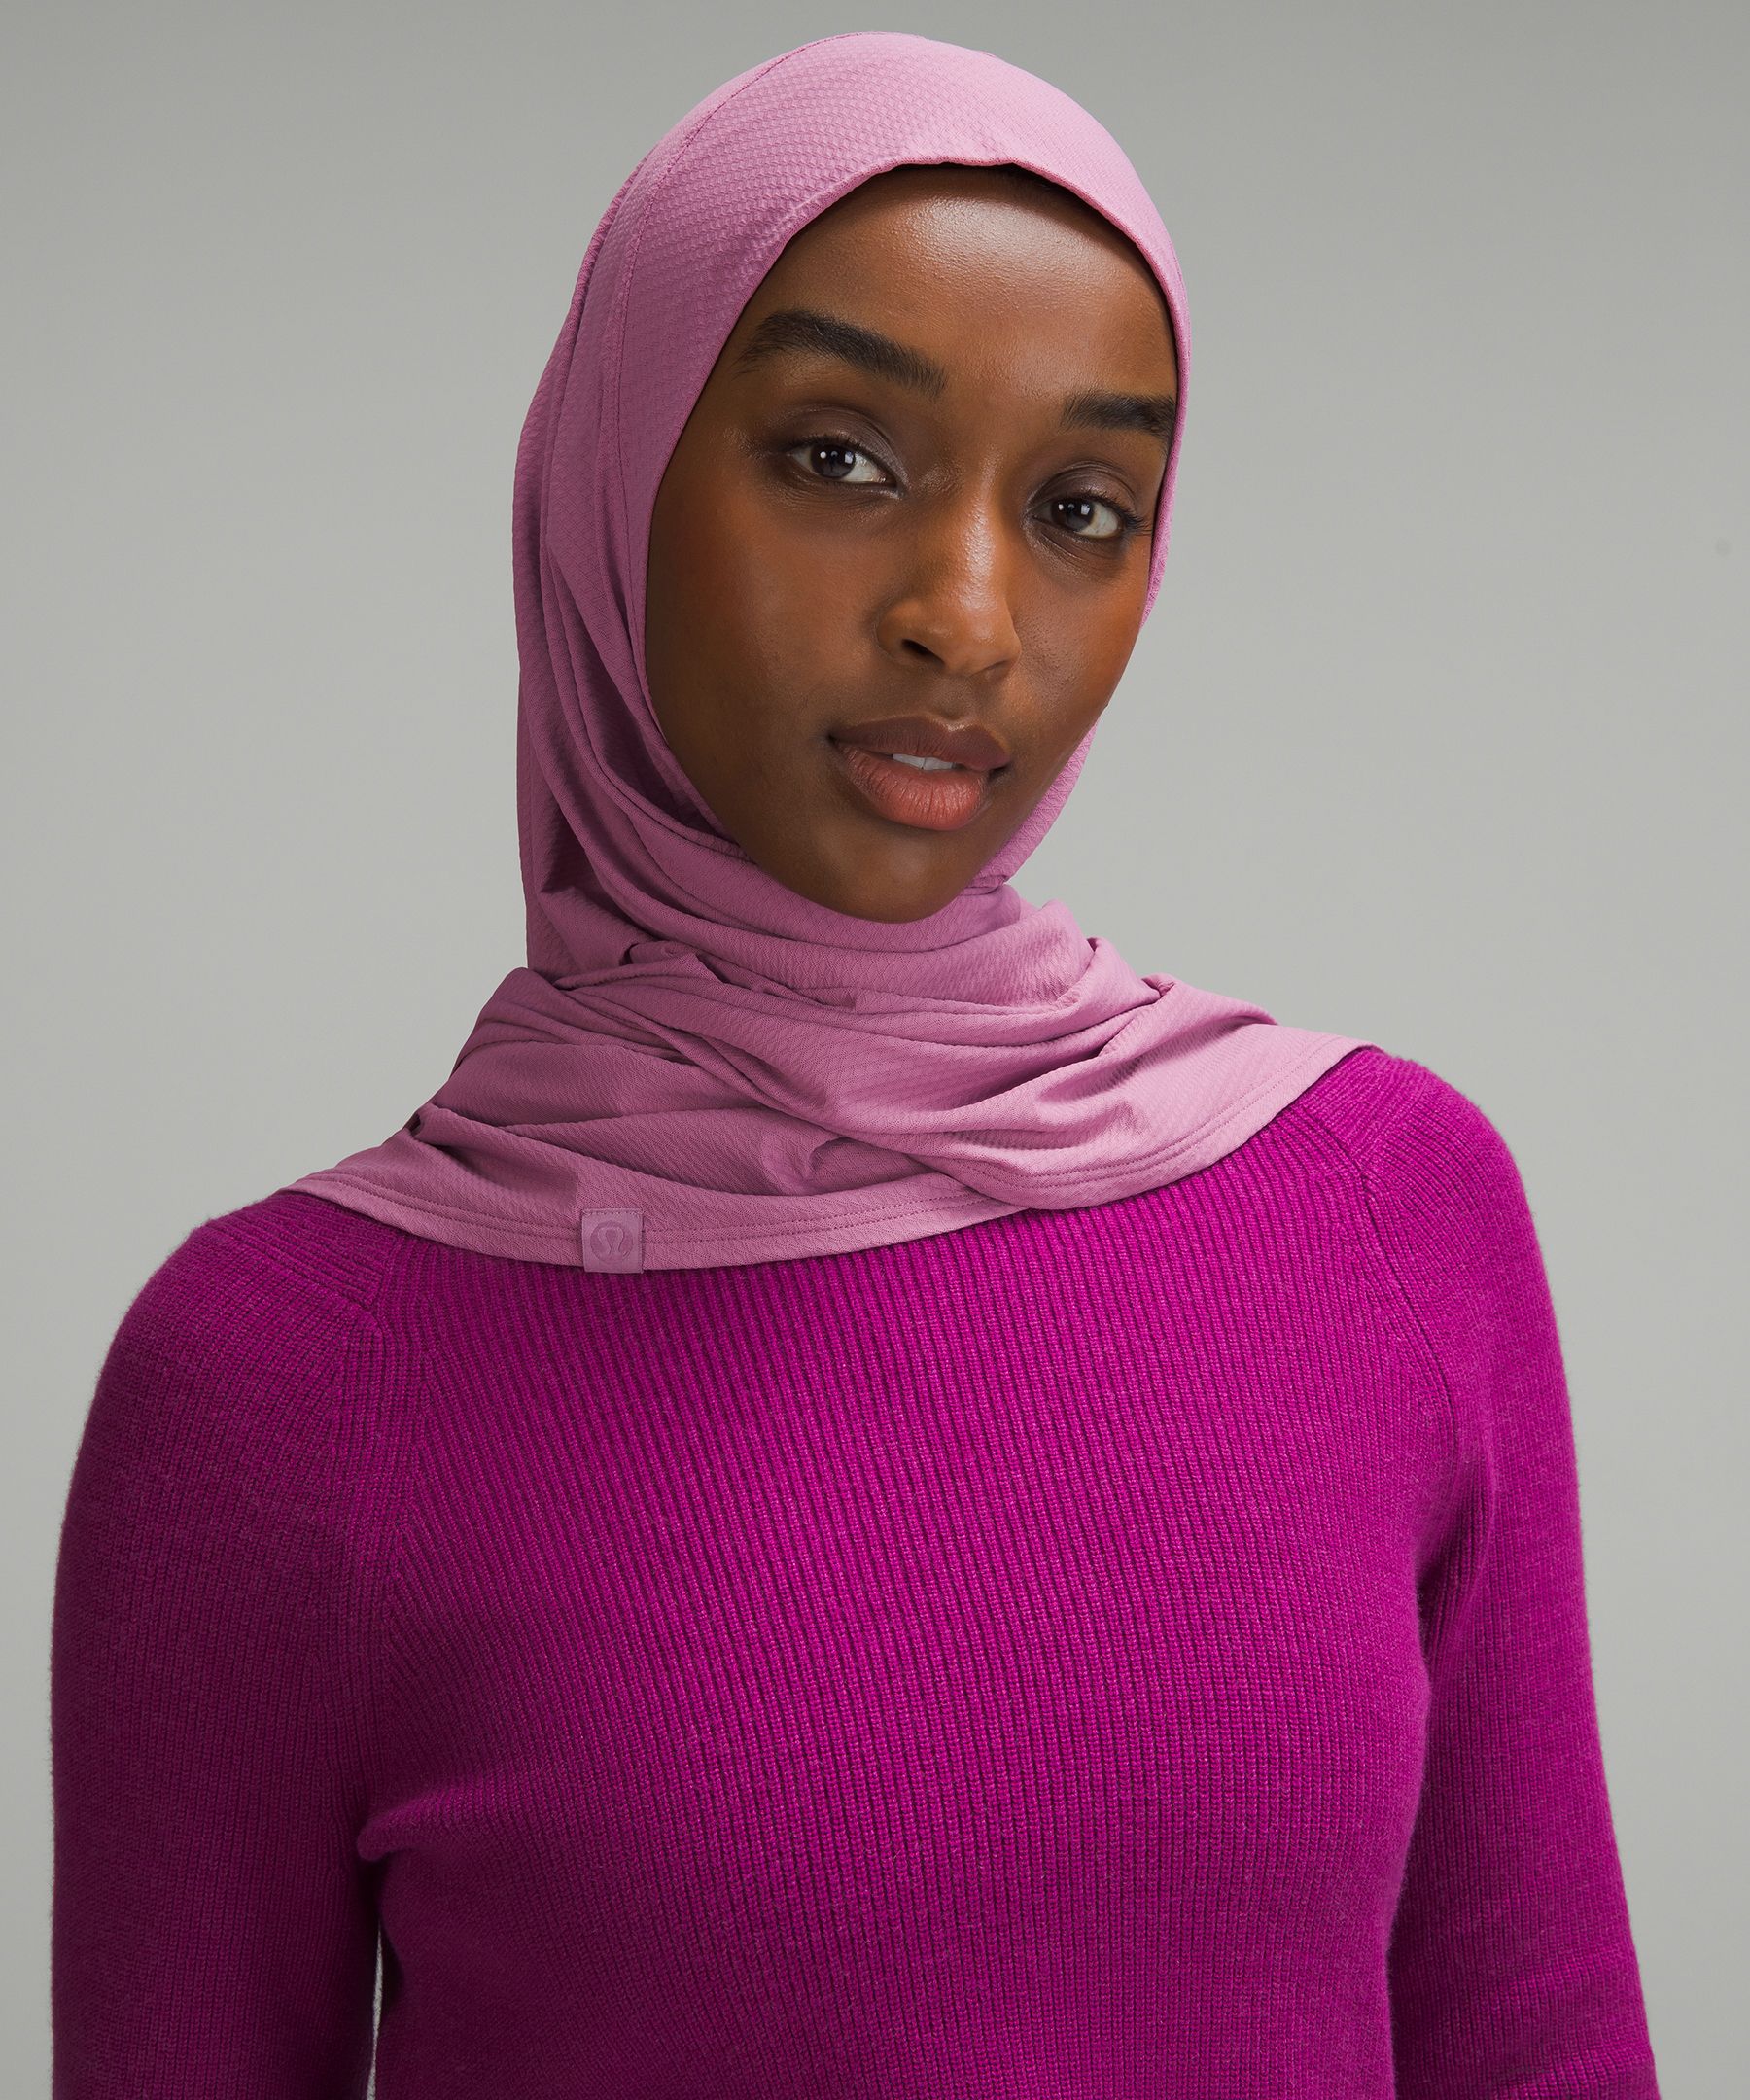 Lululemon Womens Pull-On-Style Hijab